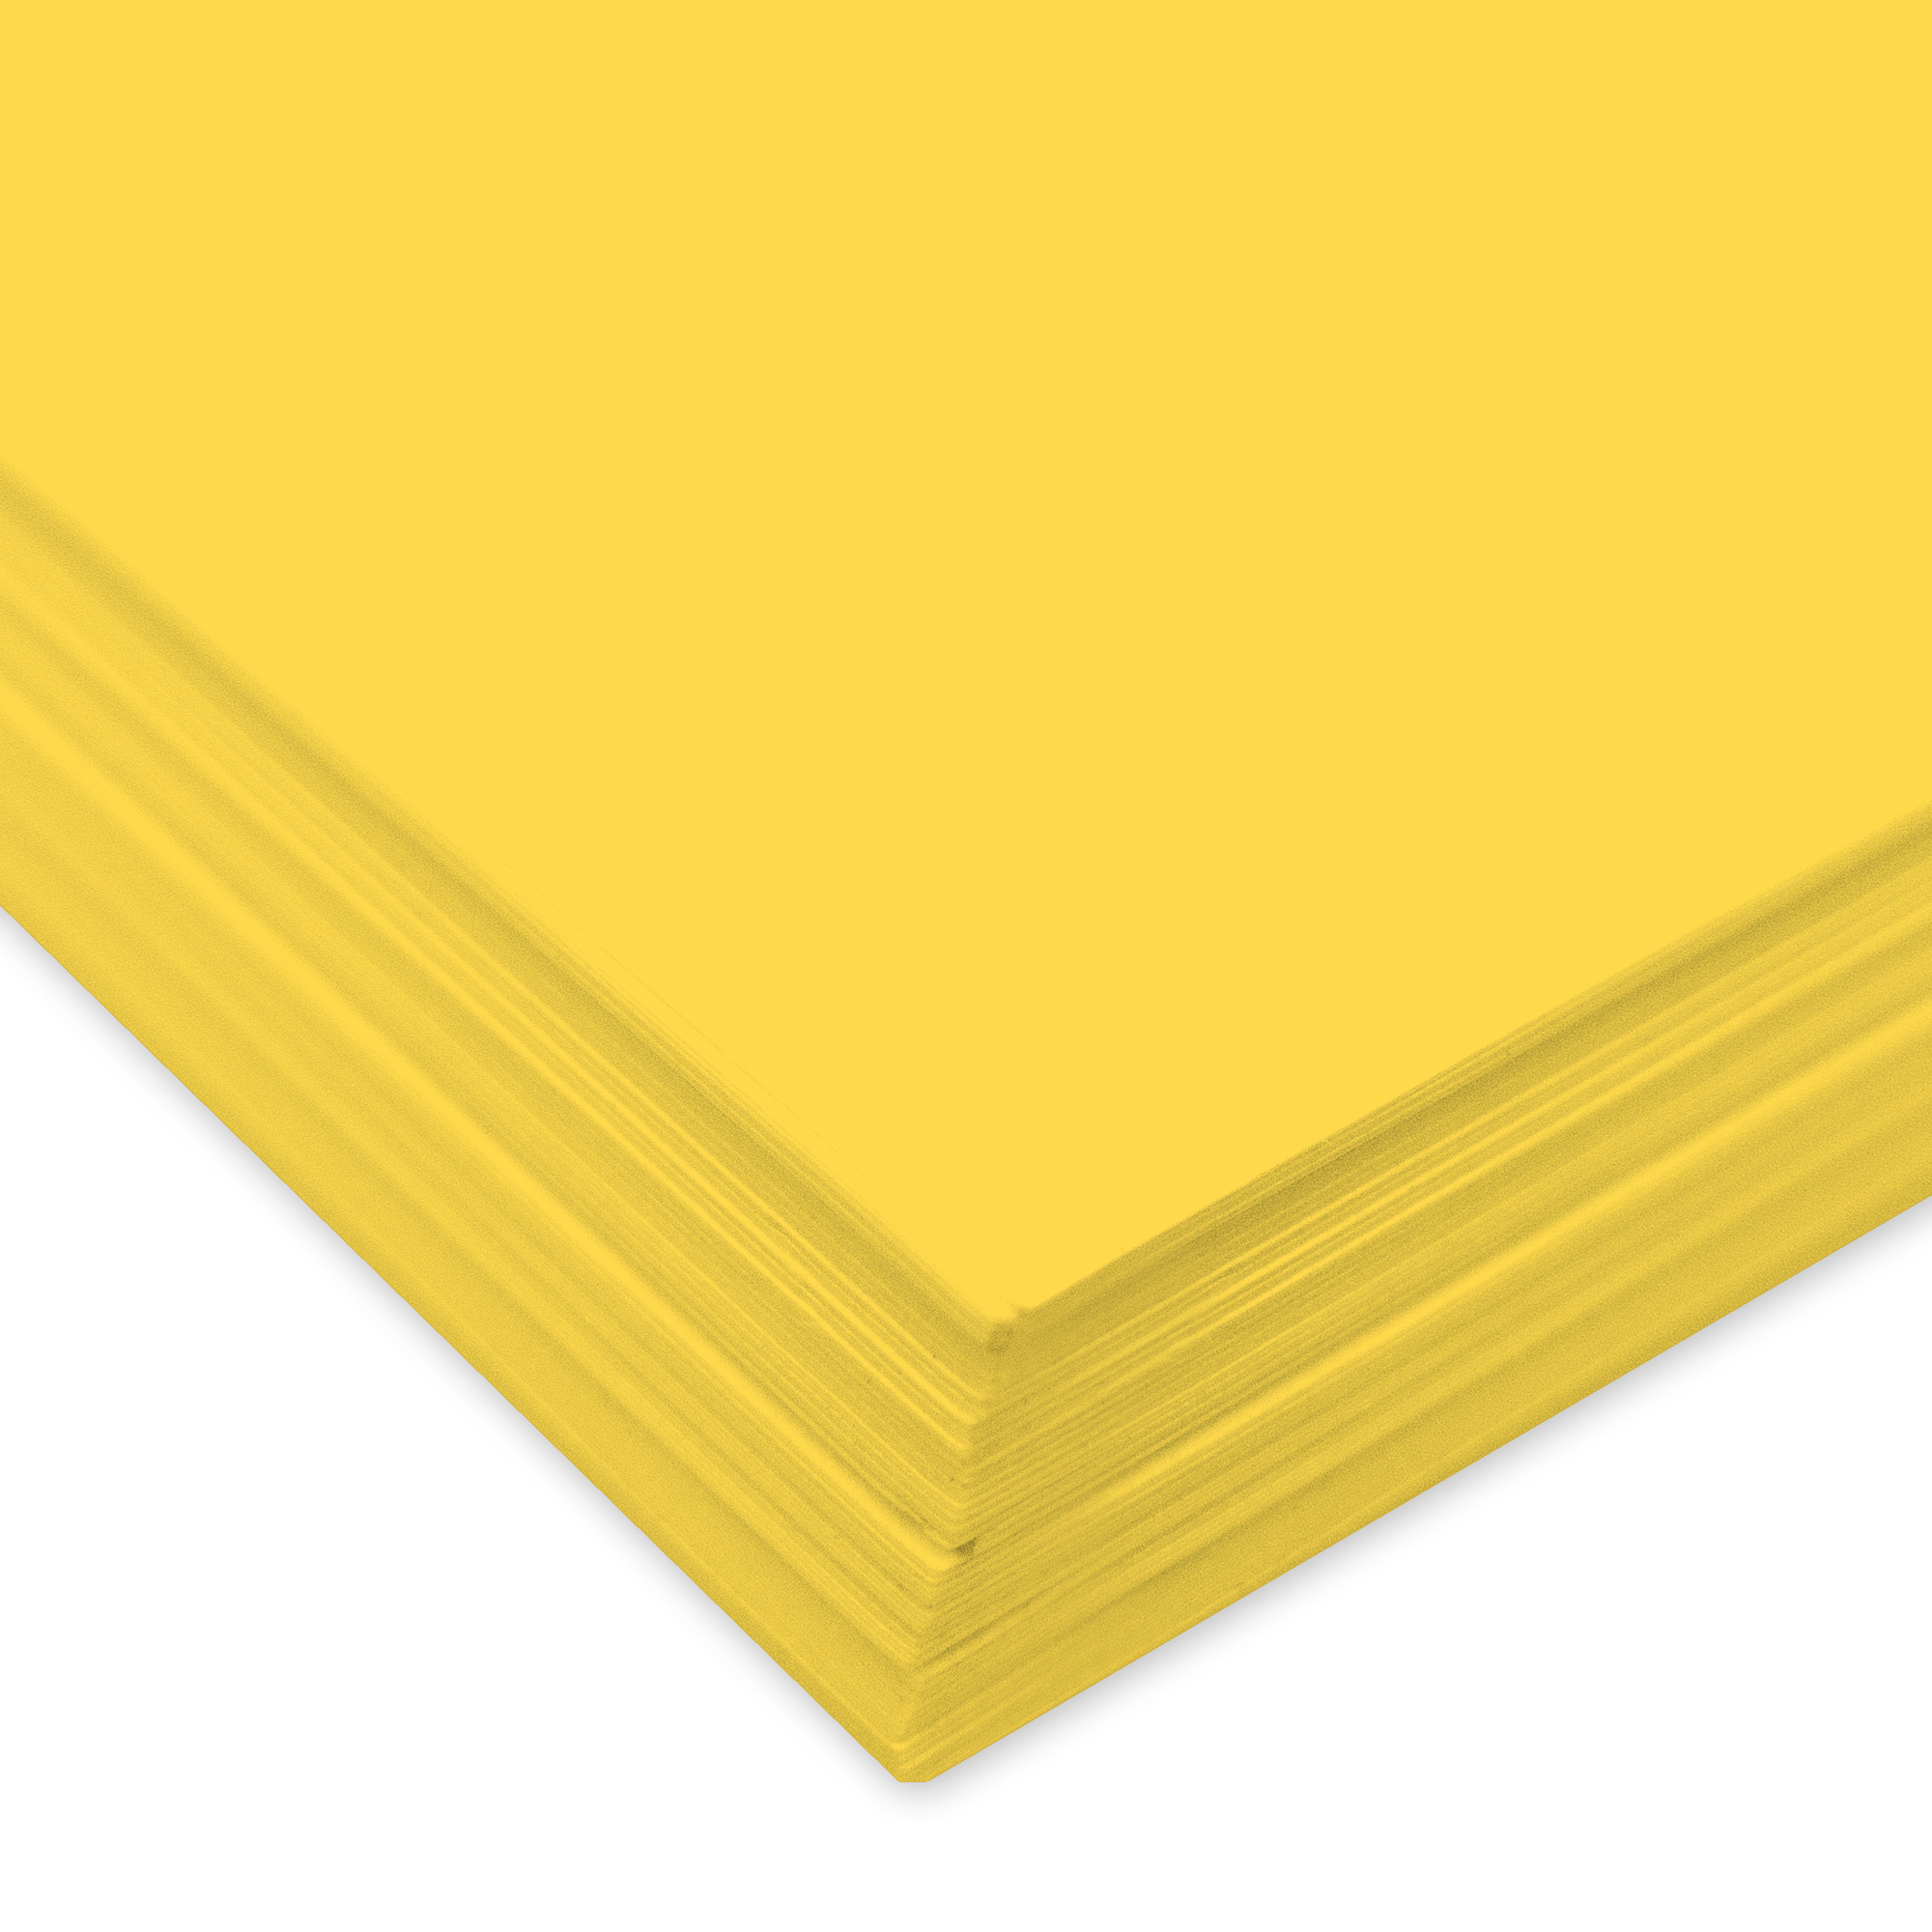 URSUS Papier à dessin couleur A4 2174613 130g, jaune 100 feuilles 130g, jaune 100 feuilles